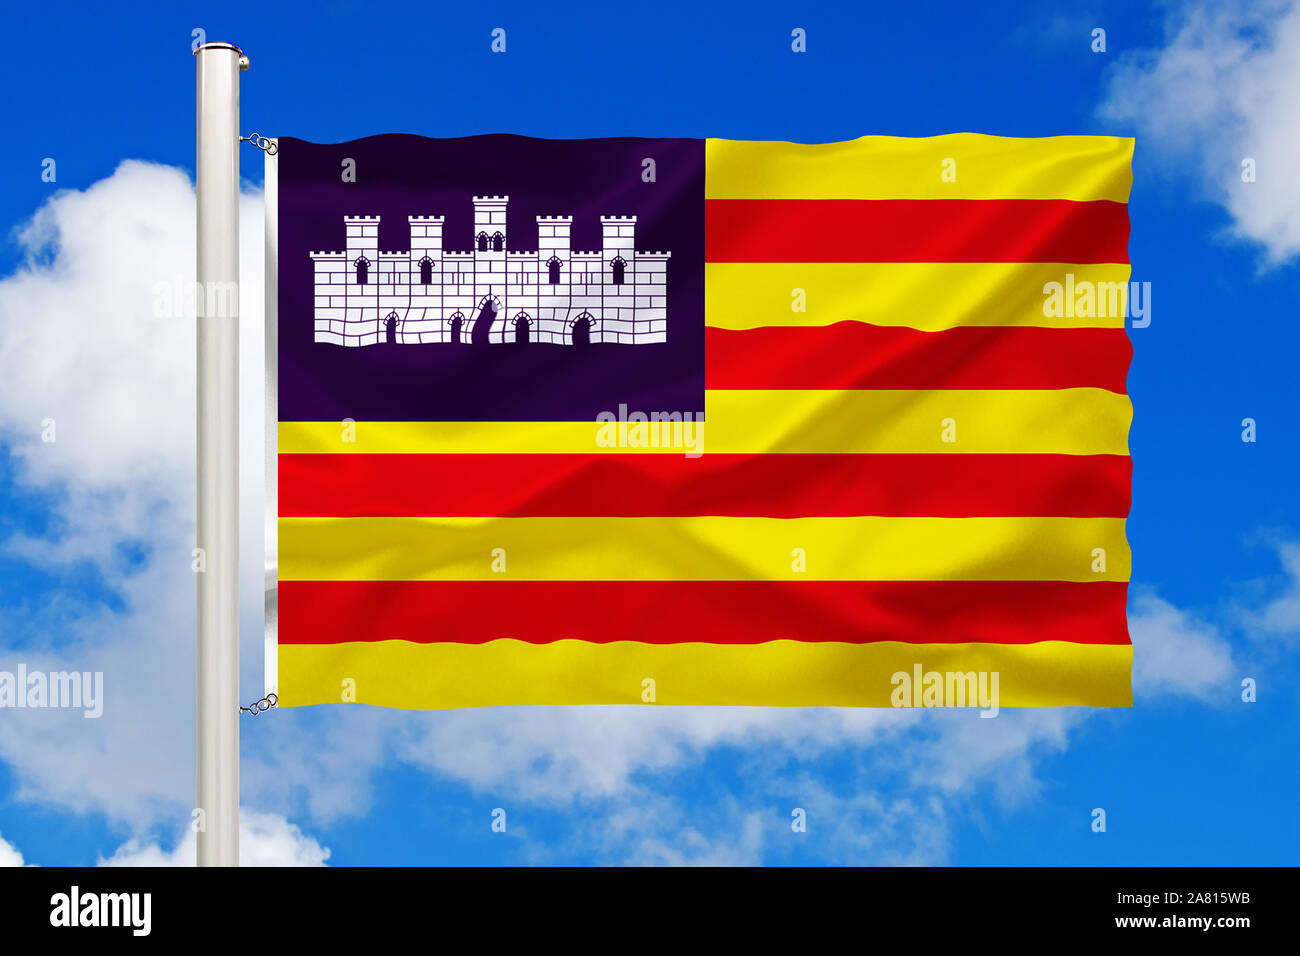 Spanien, katalonien, Nationalfahne, Nationalflagge, Fahne, Flagge, Flaggenmast, Cumulus Wolken vor blauen Himmel, Stock Photo